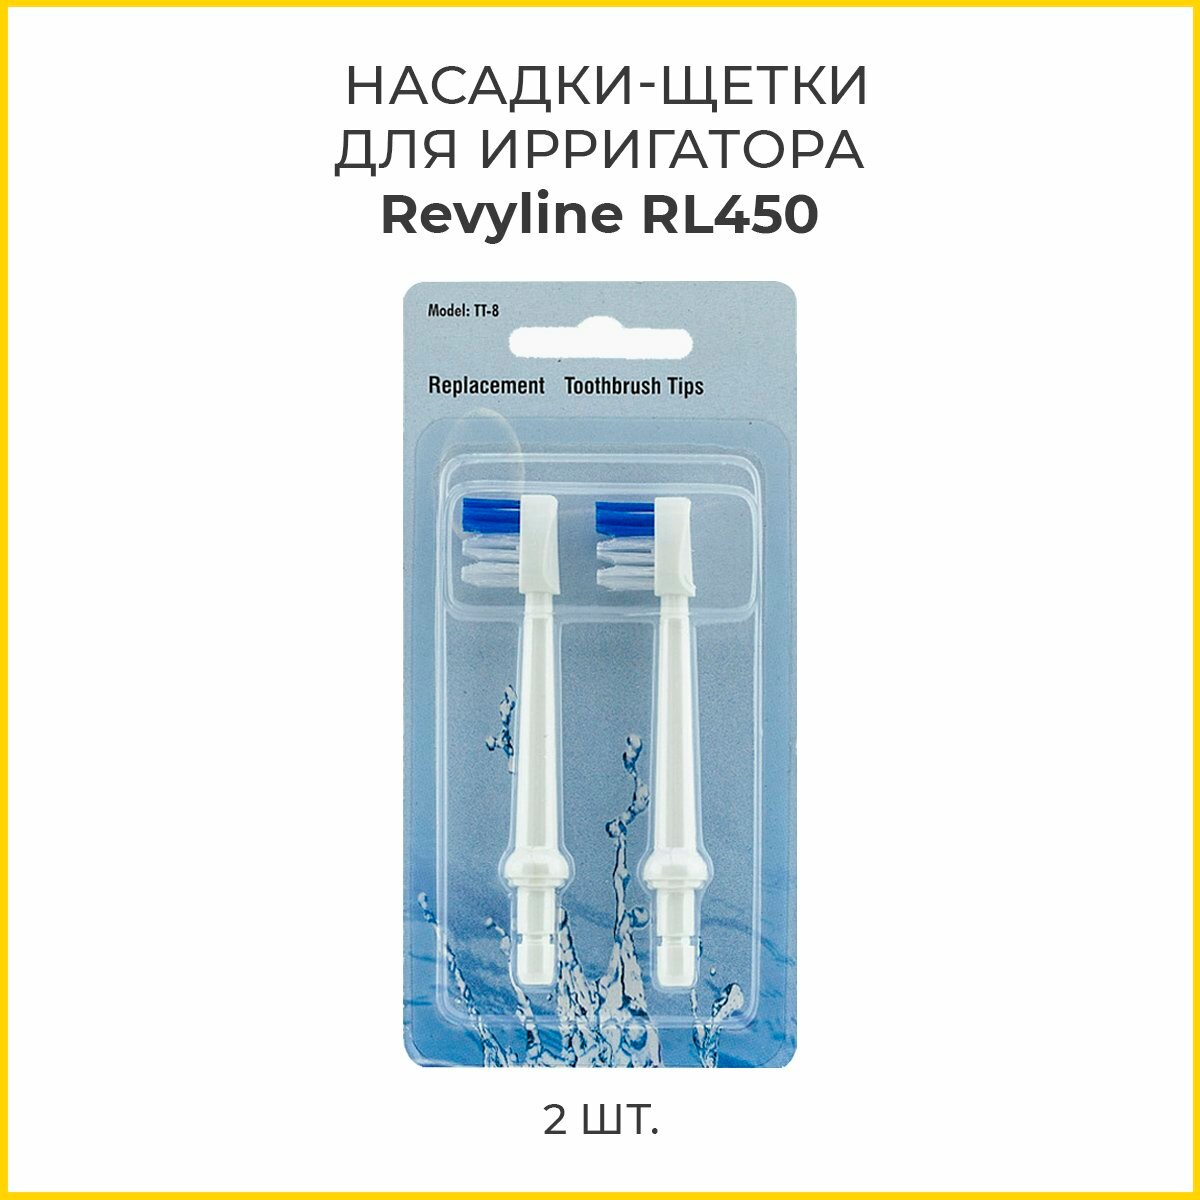 Сменные насадки-щетки для ирригатора Revyline RL 450, 2 шт.